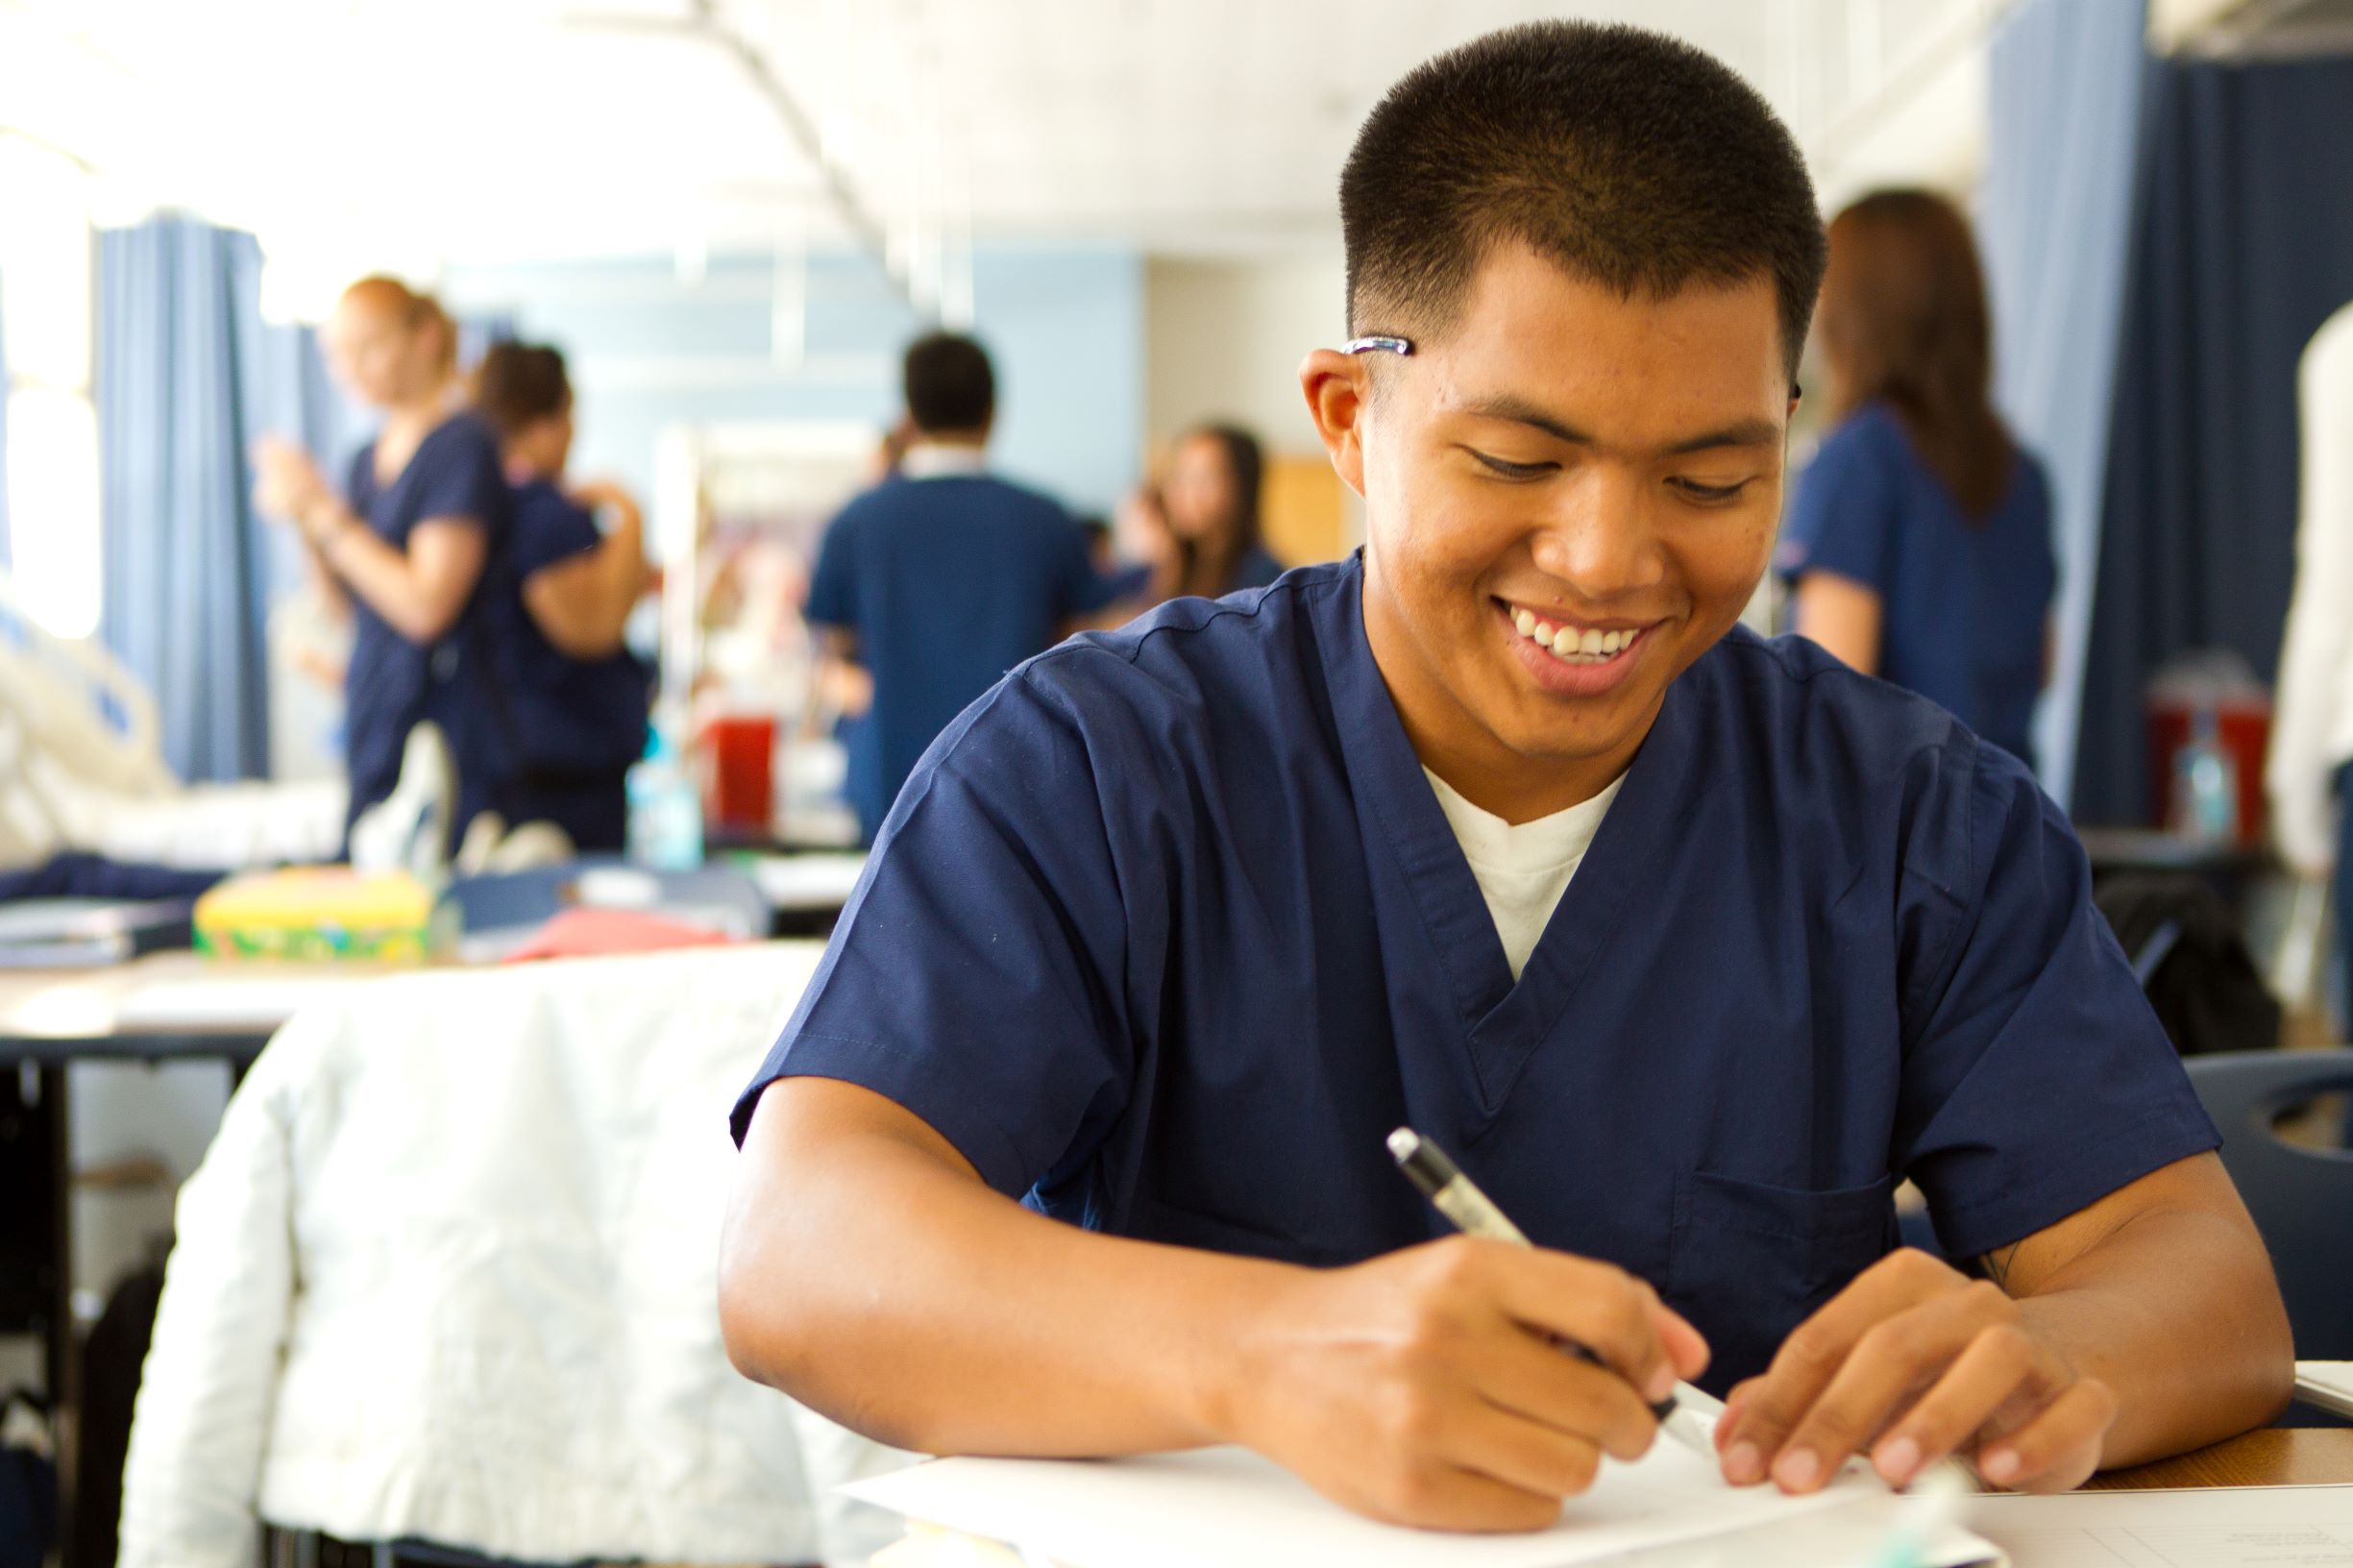 Nursing student in scrubs writes on paper.